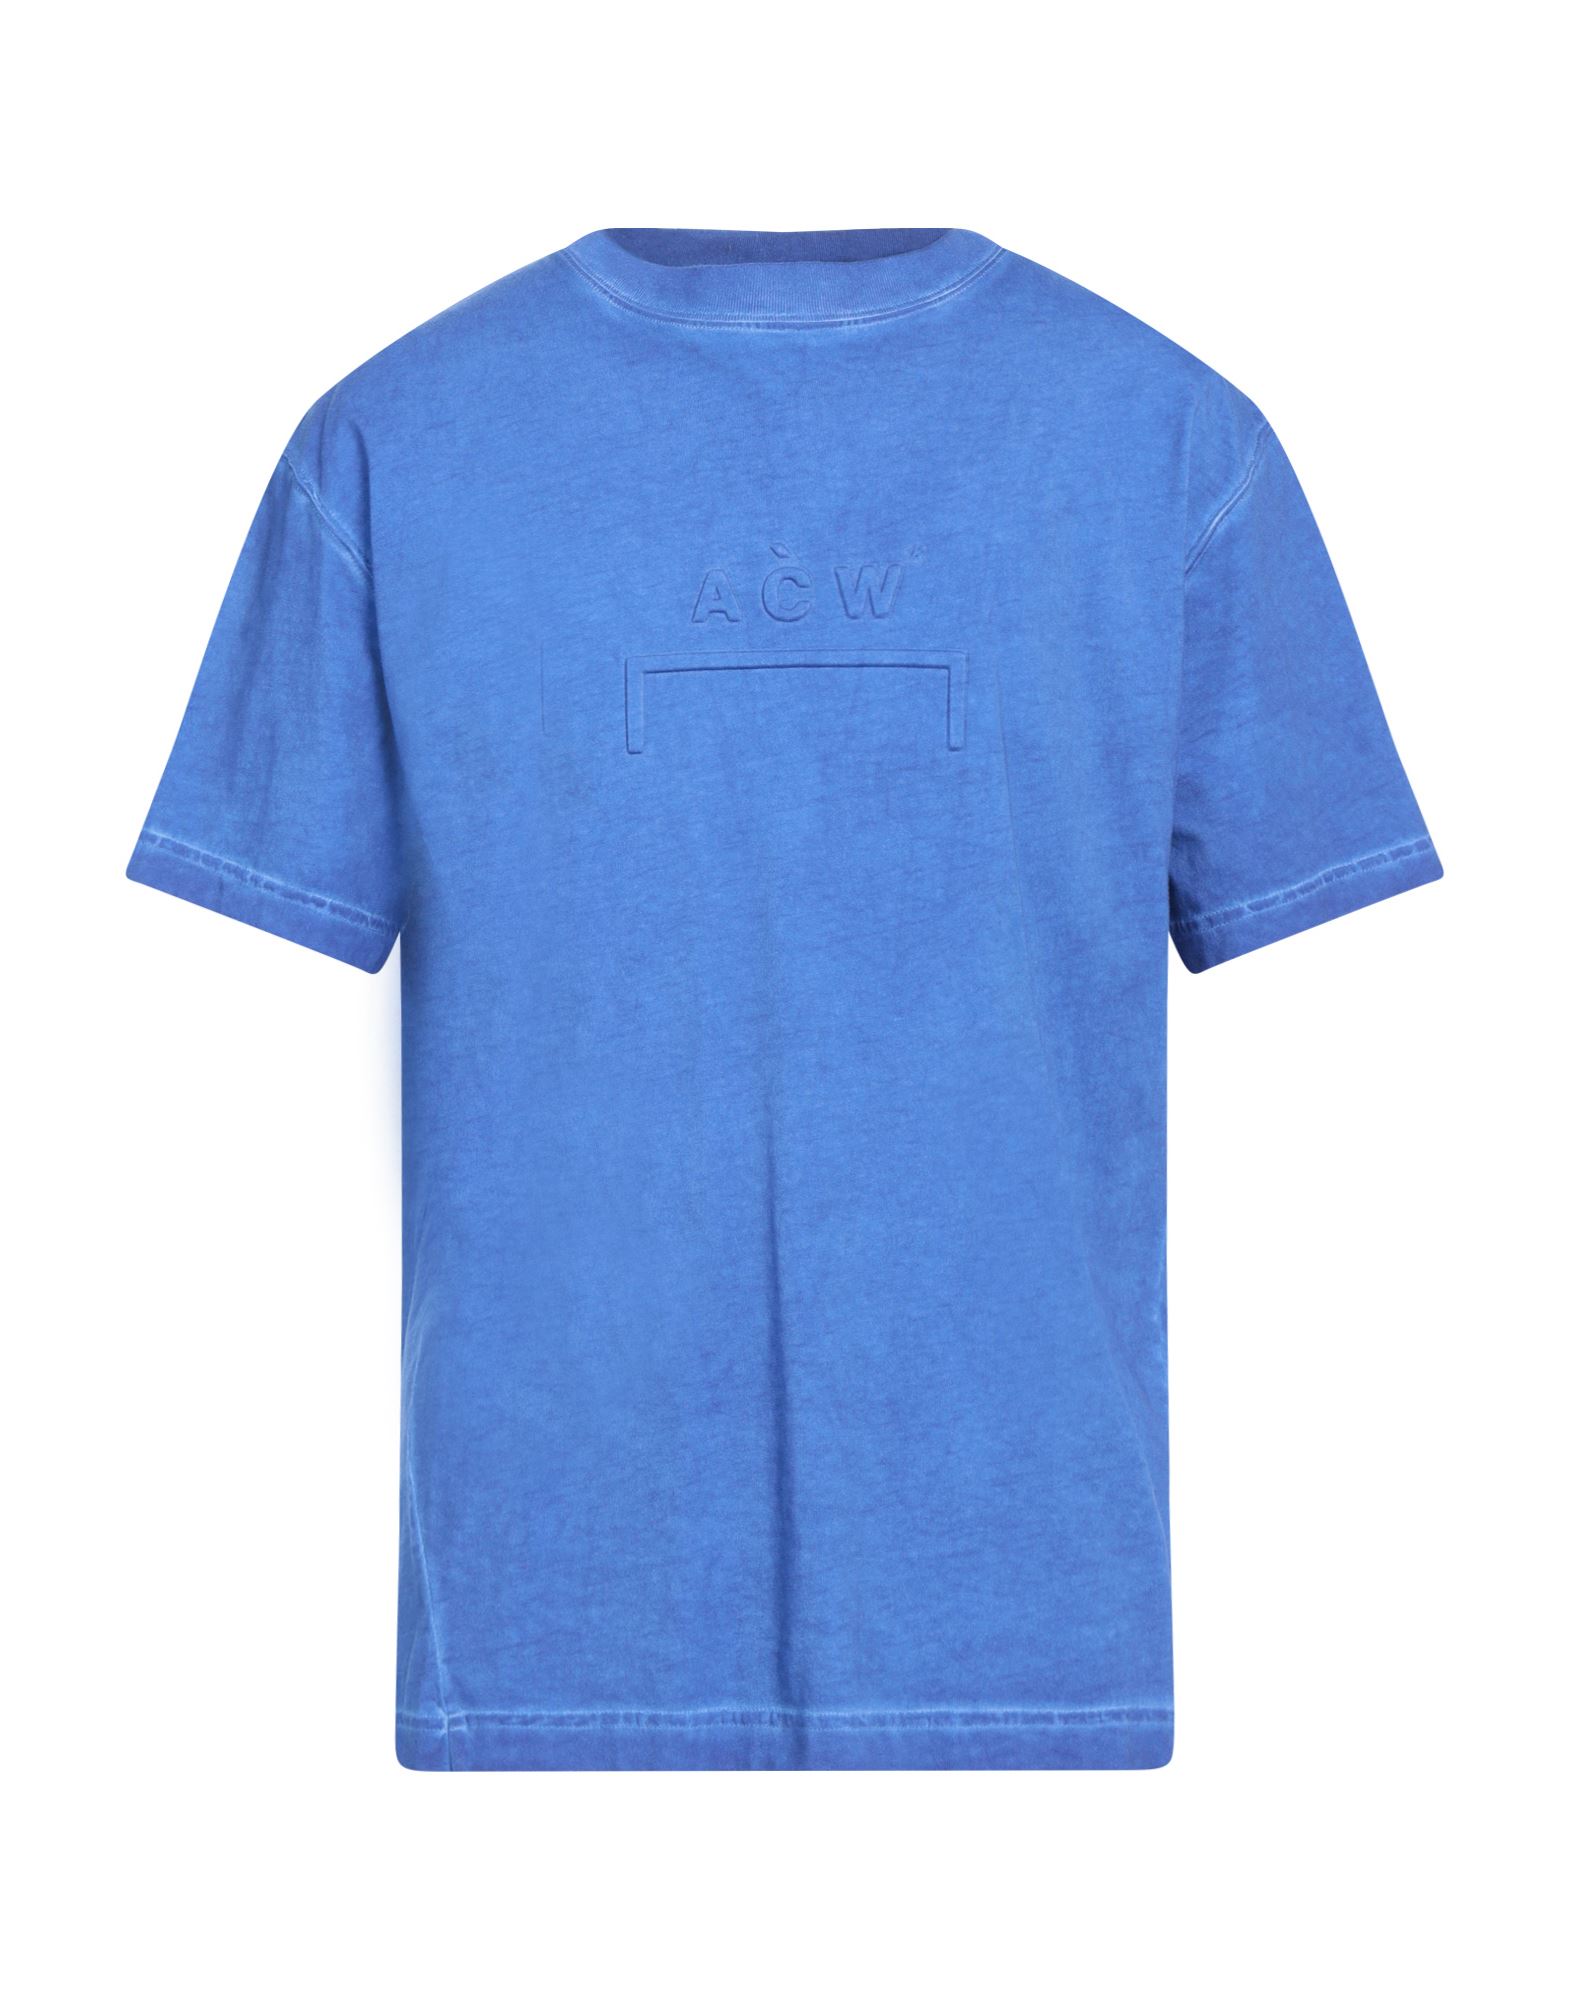 A-COLD-WALL* T-shirts Herren Blau von A-COLD-WALL*